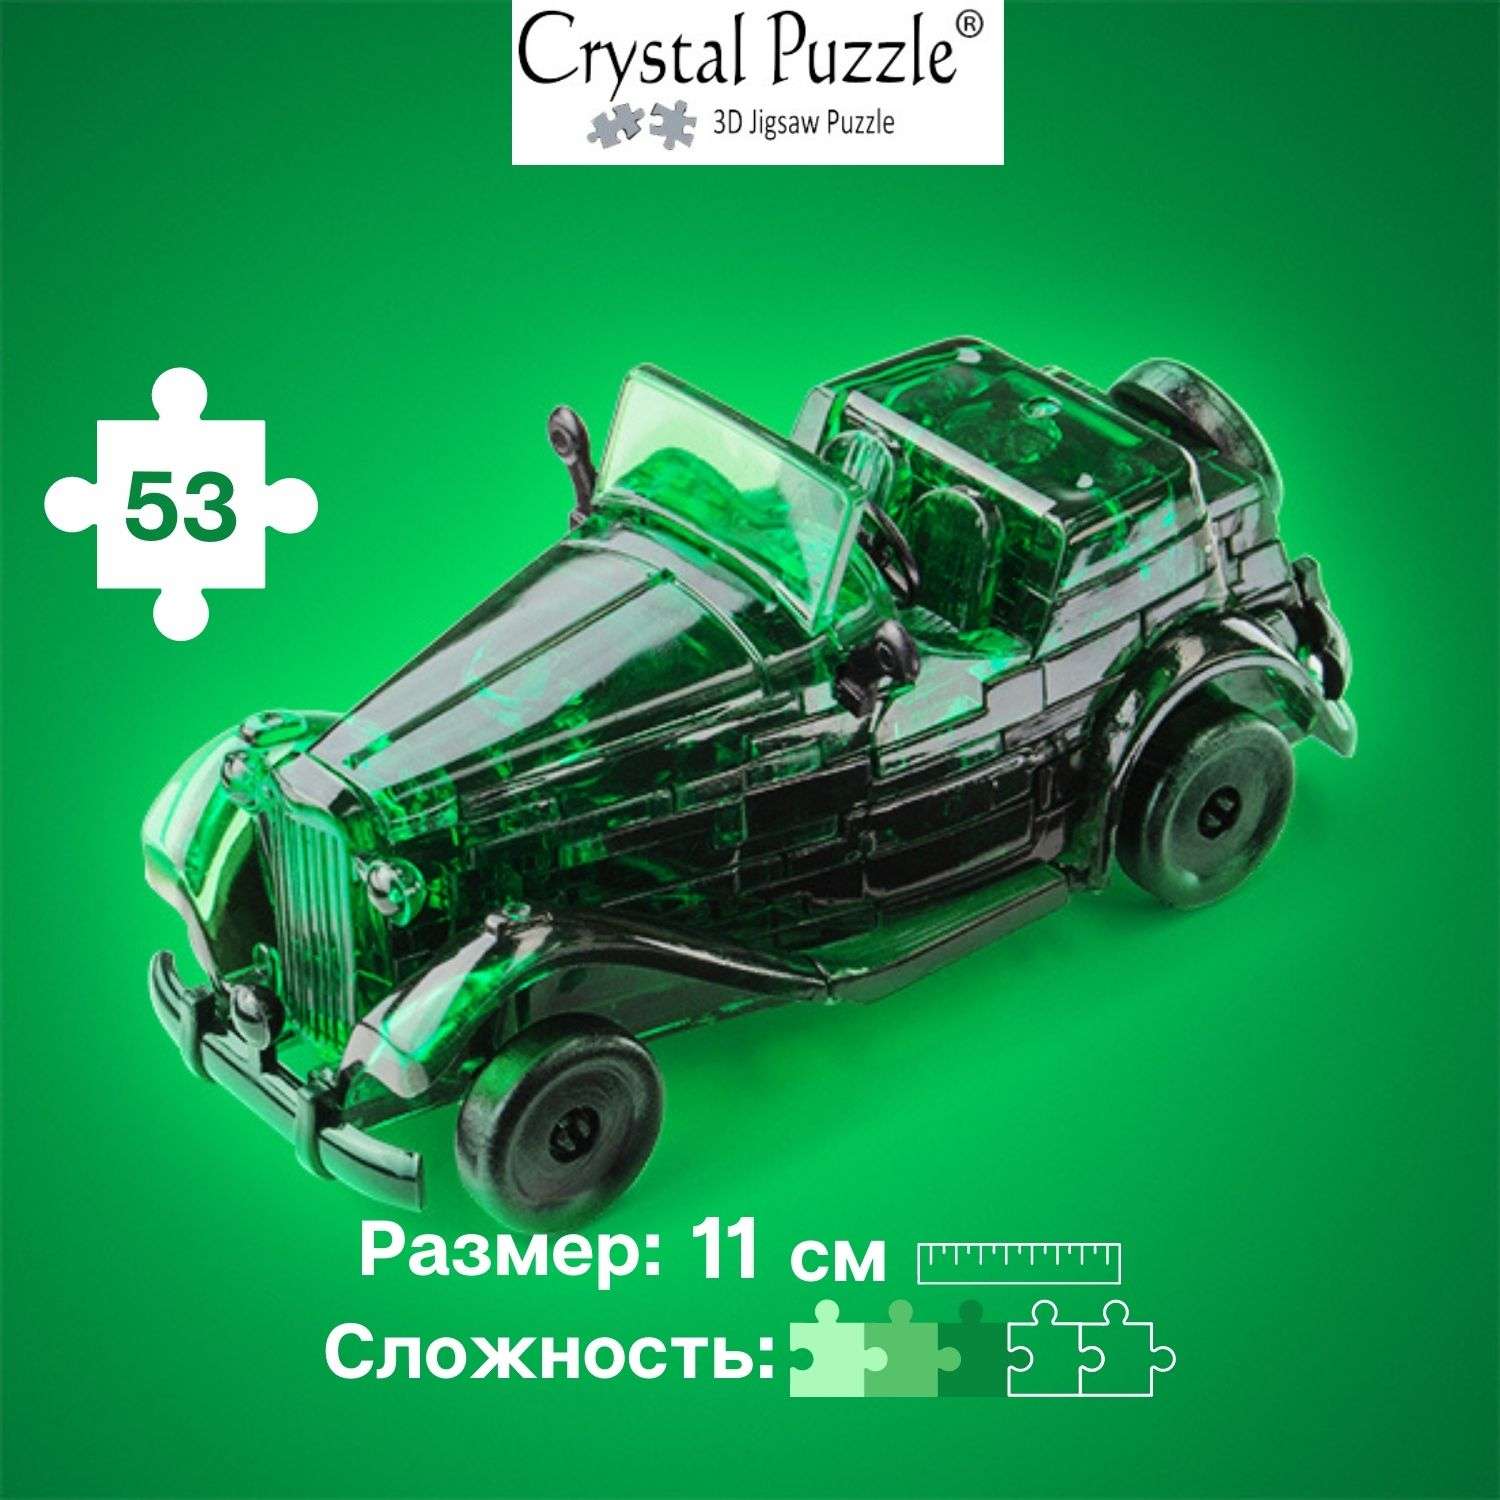 3D-пазл Crystal Puzzle IQ игра для детей кристальный Автомобиль зеленый 53 детали - фото 1